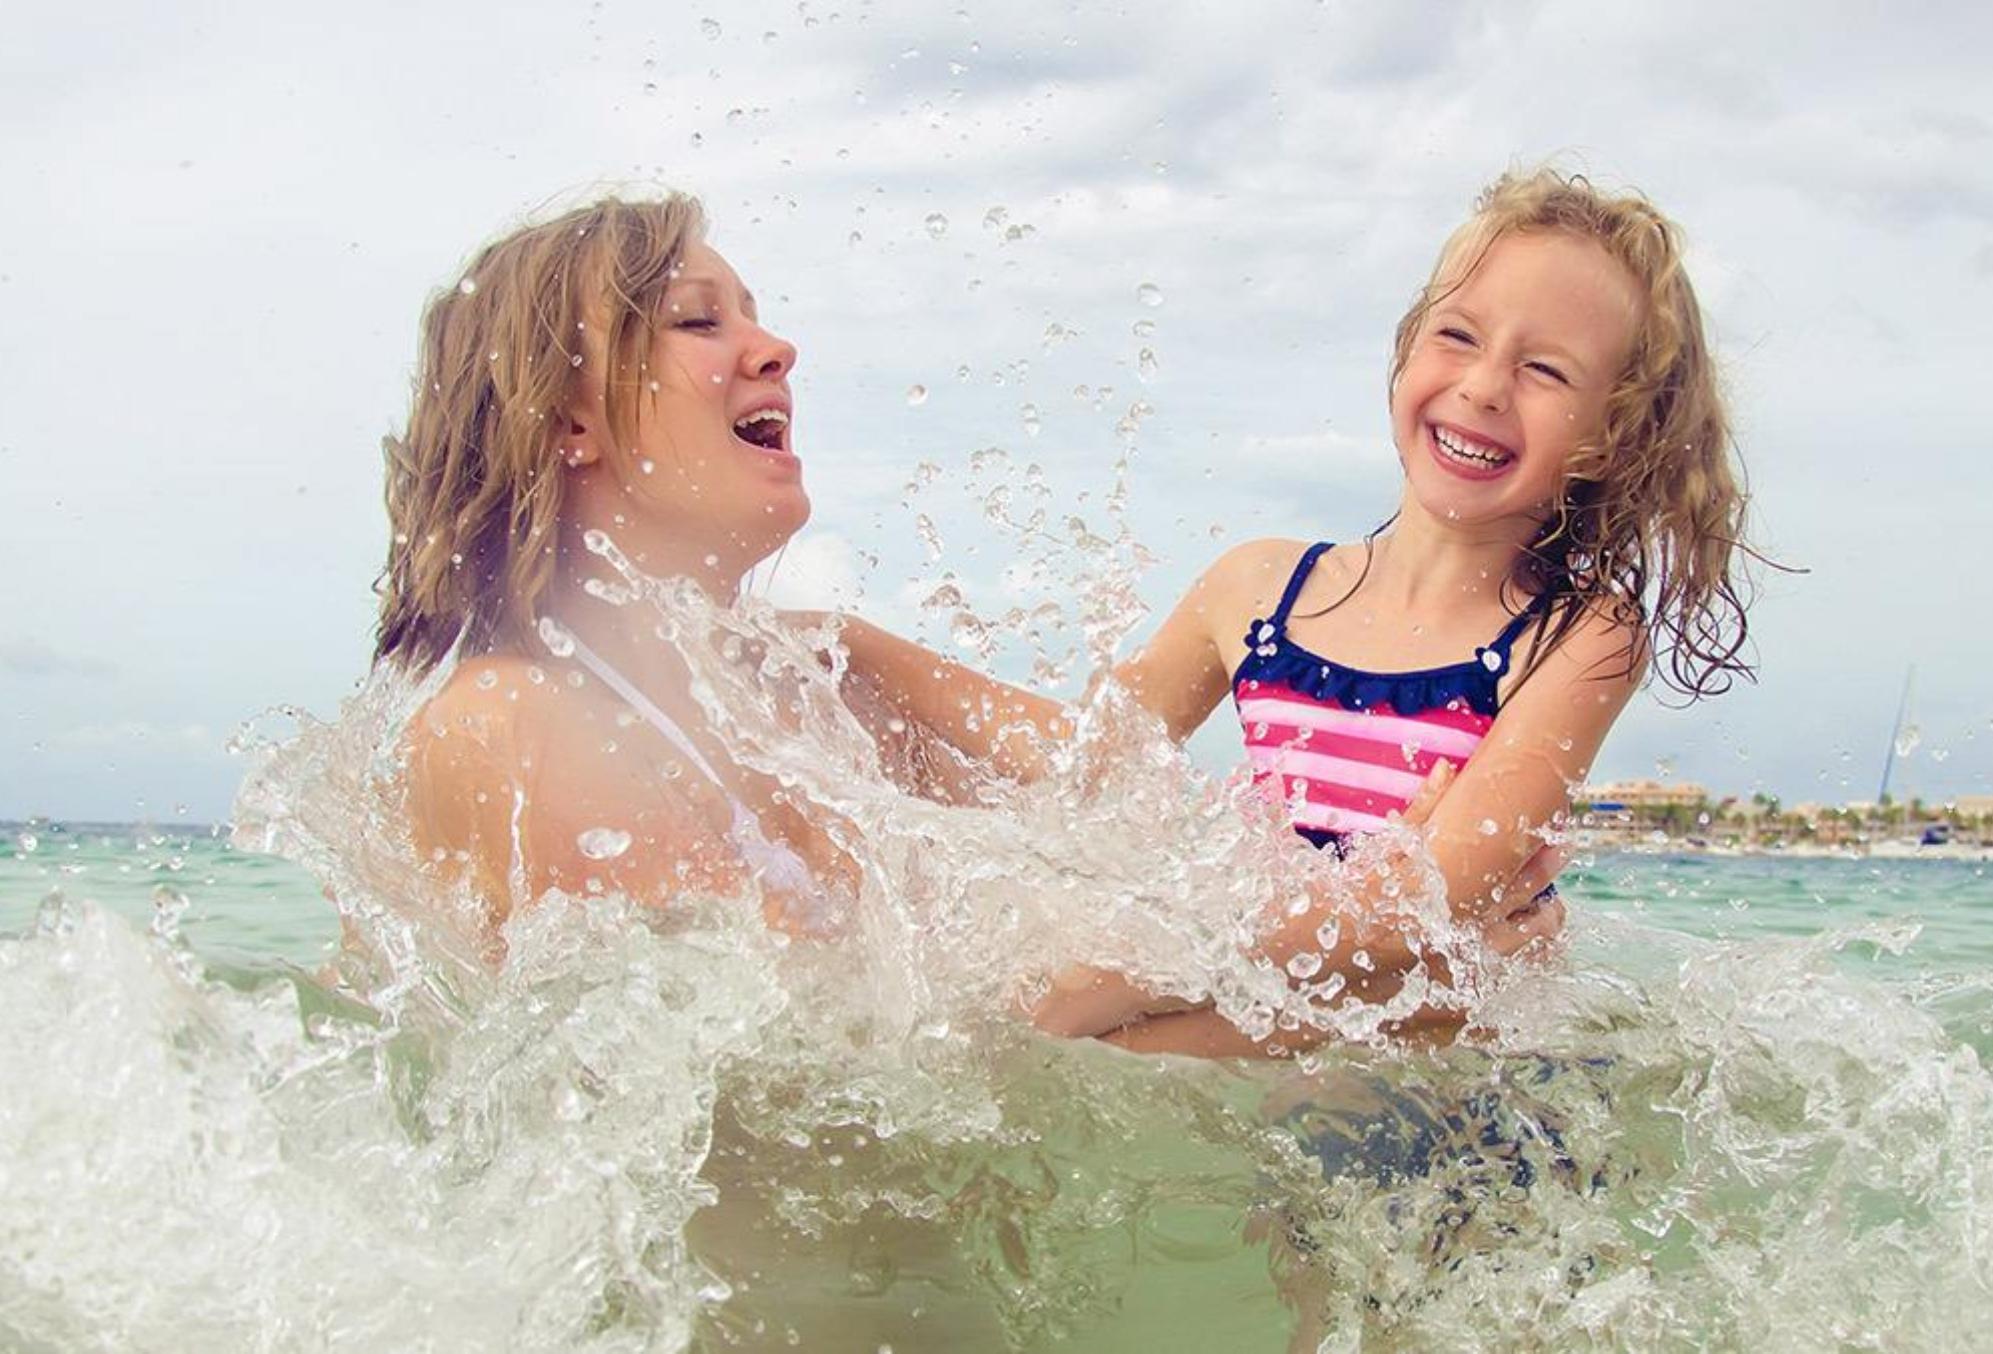 Διακοπές με μικρά παιδιά – Μαμά σε πανικό: Συμβουλές που θα κάνουν πιο εύκολες και ξεκούραστες τις διακοπές σας 